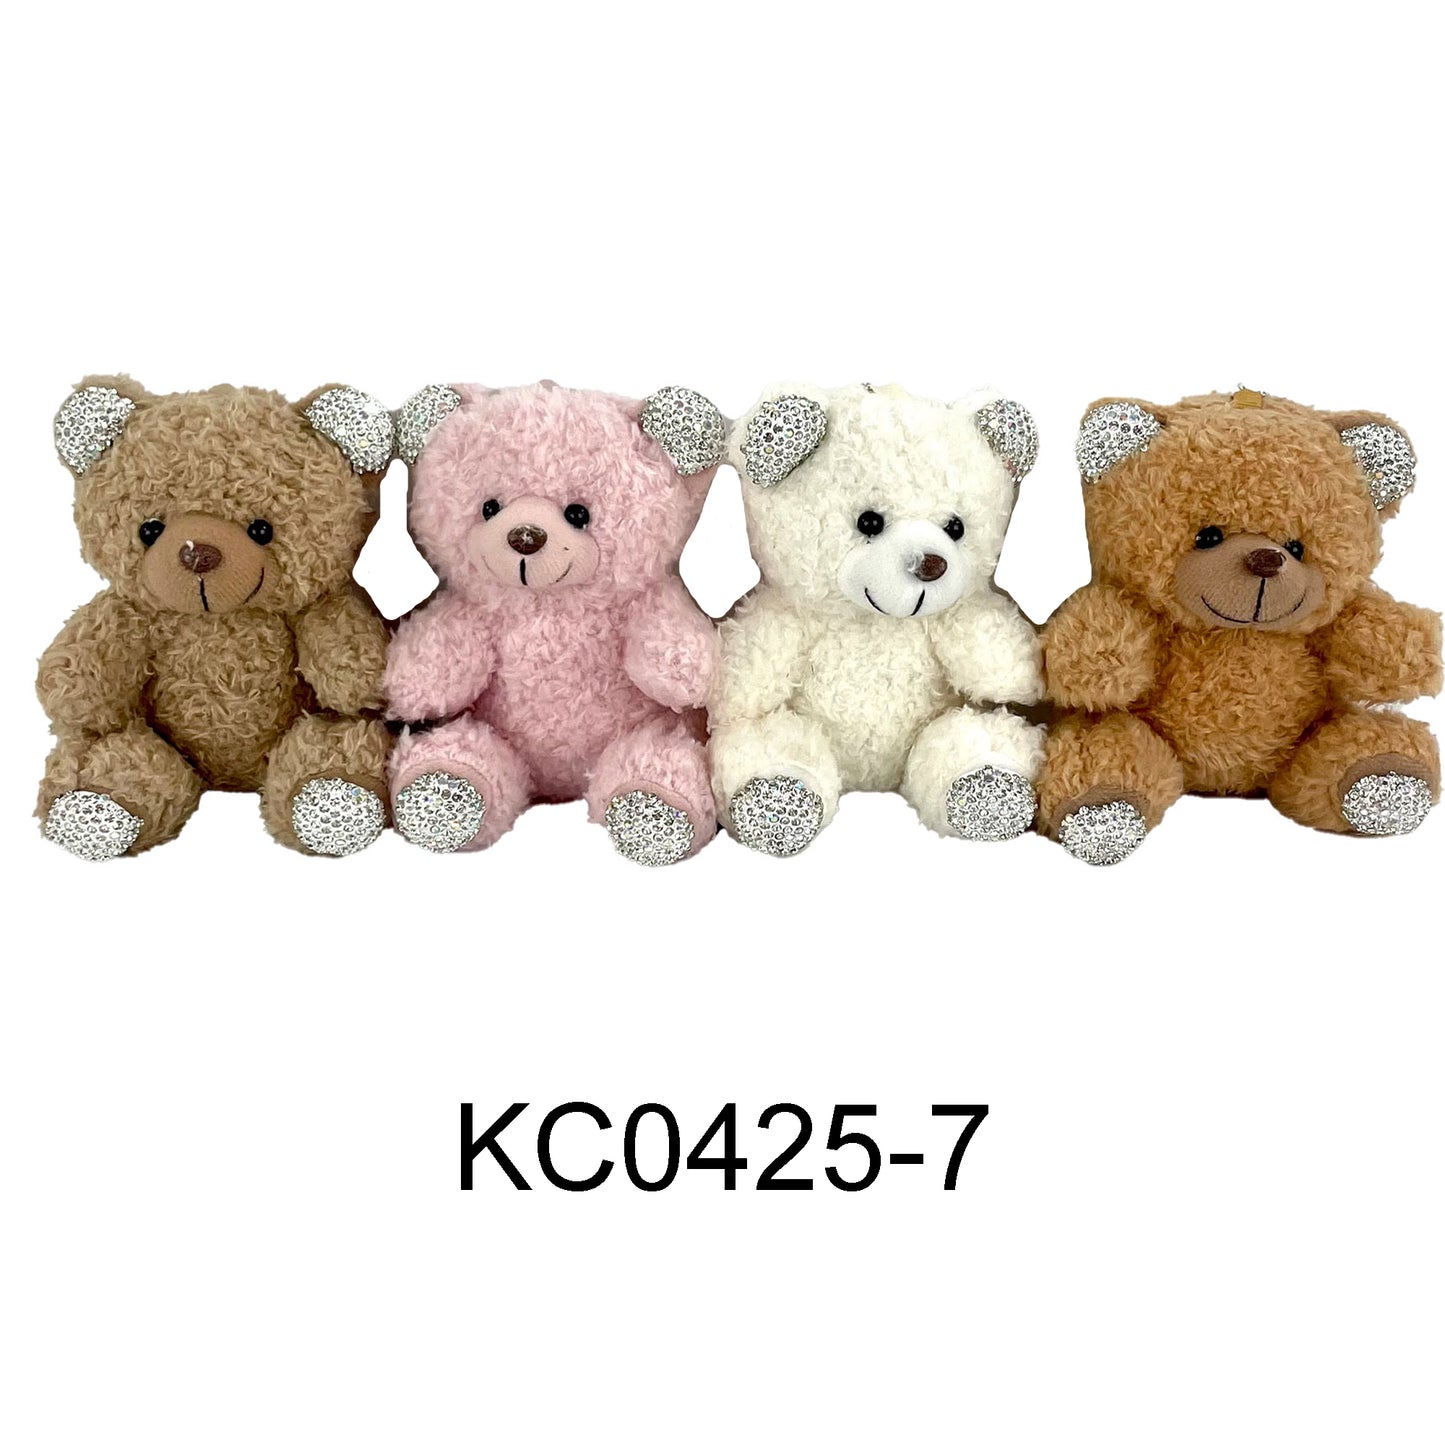 RHINESTONE TEDDY BEAR PLUSH KEY CHAIN 0425-7 (12PC)